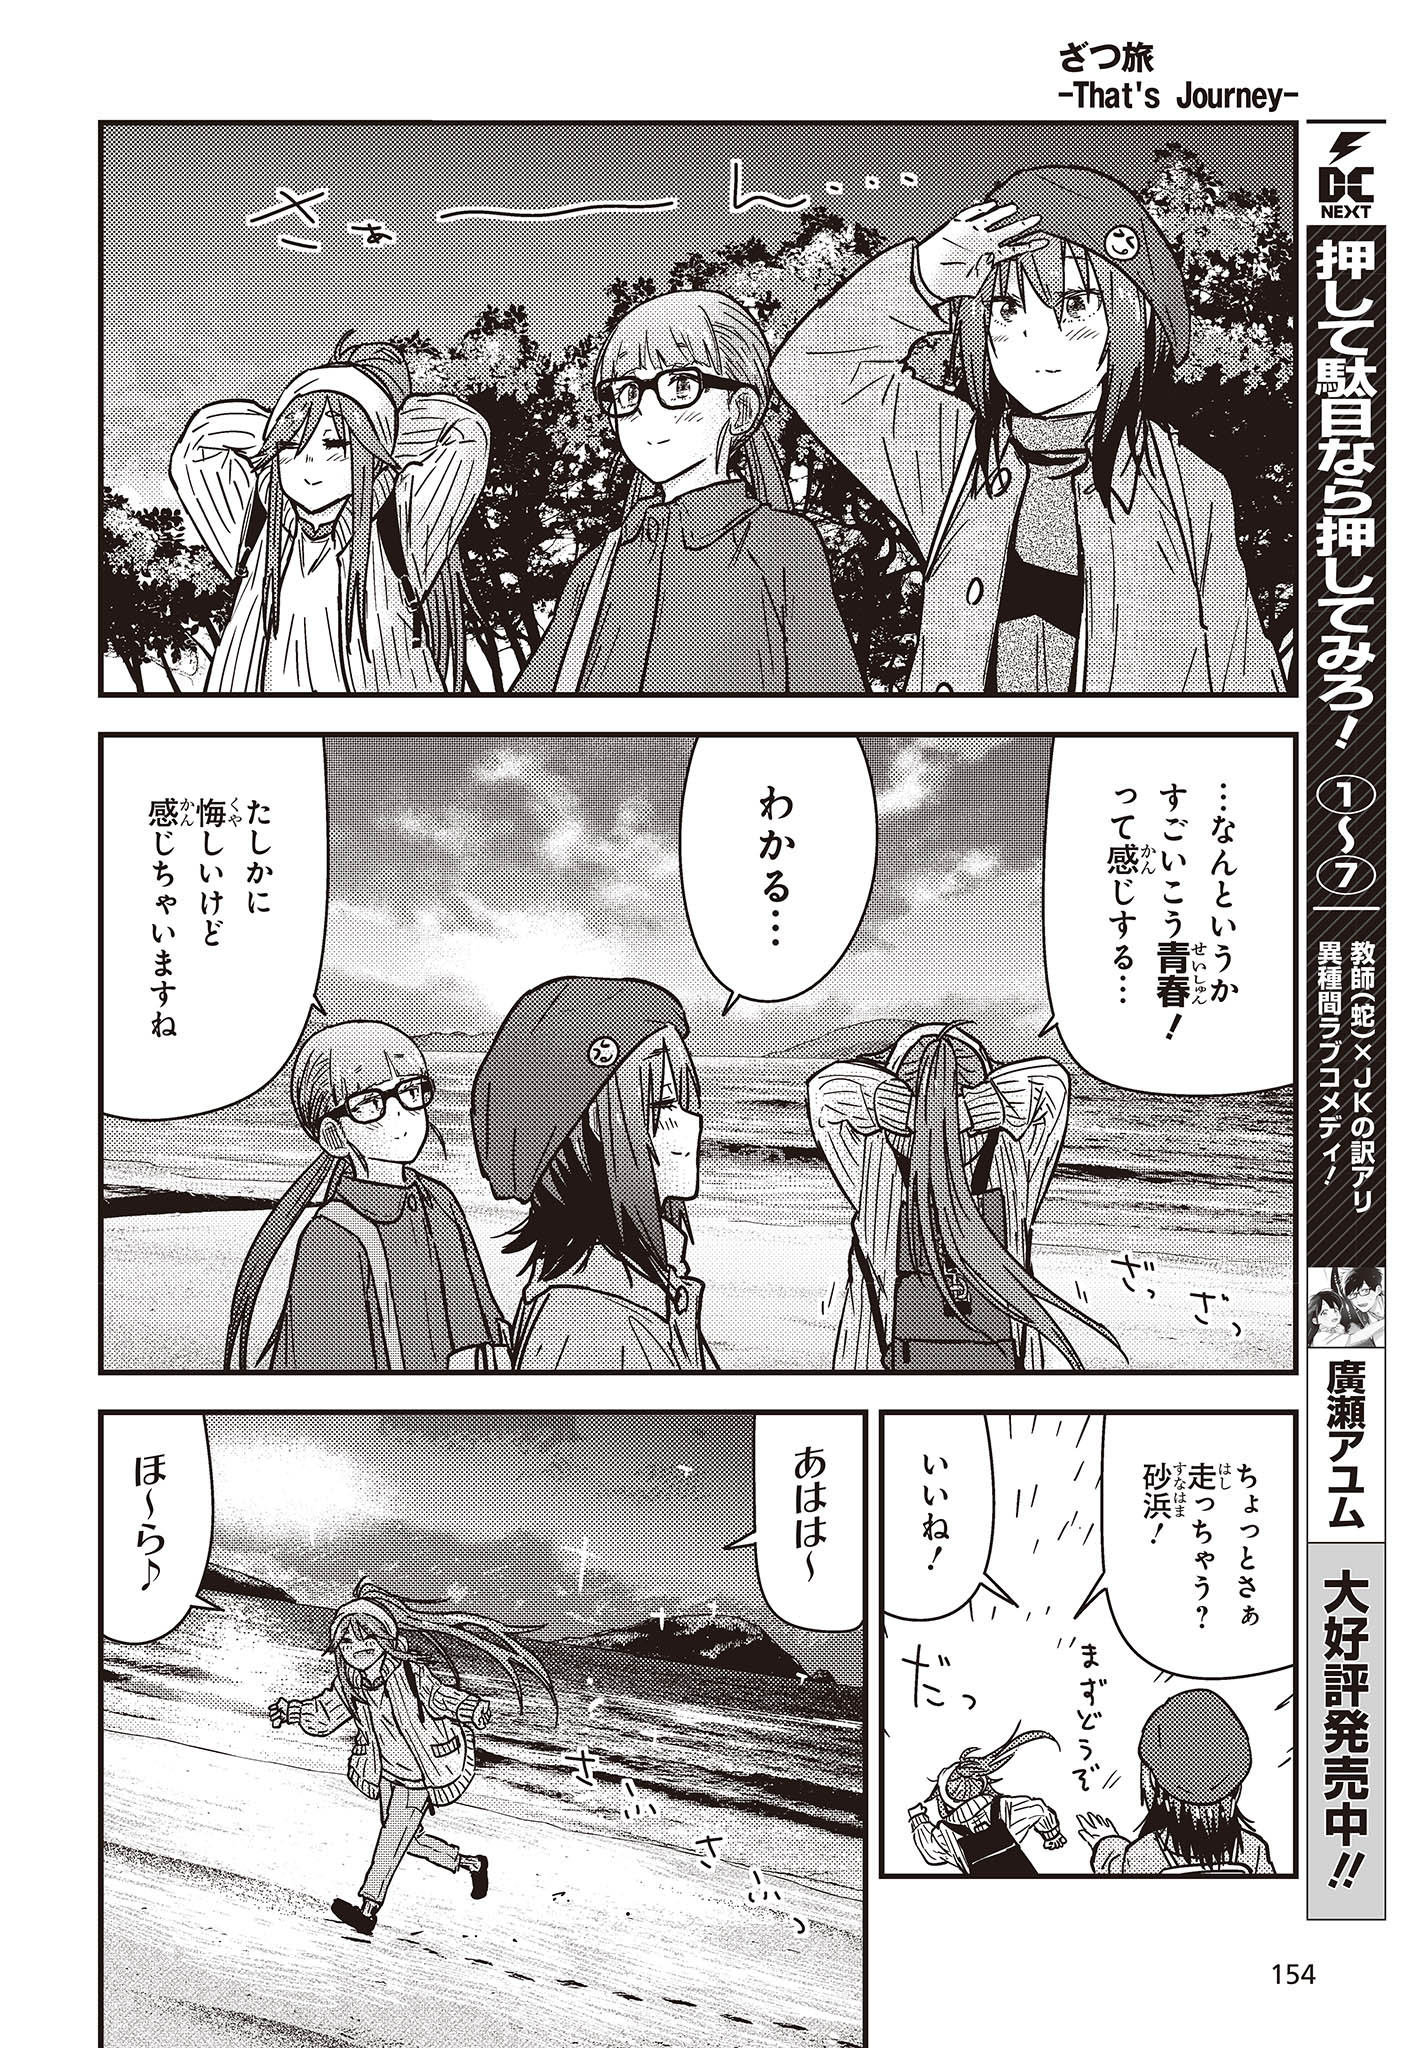 ざつ旅-That’s Journey- 第30話 - Page 18